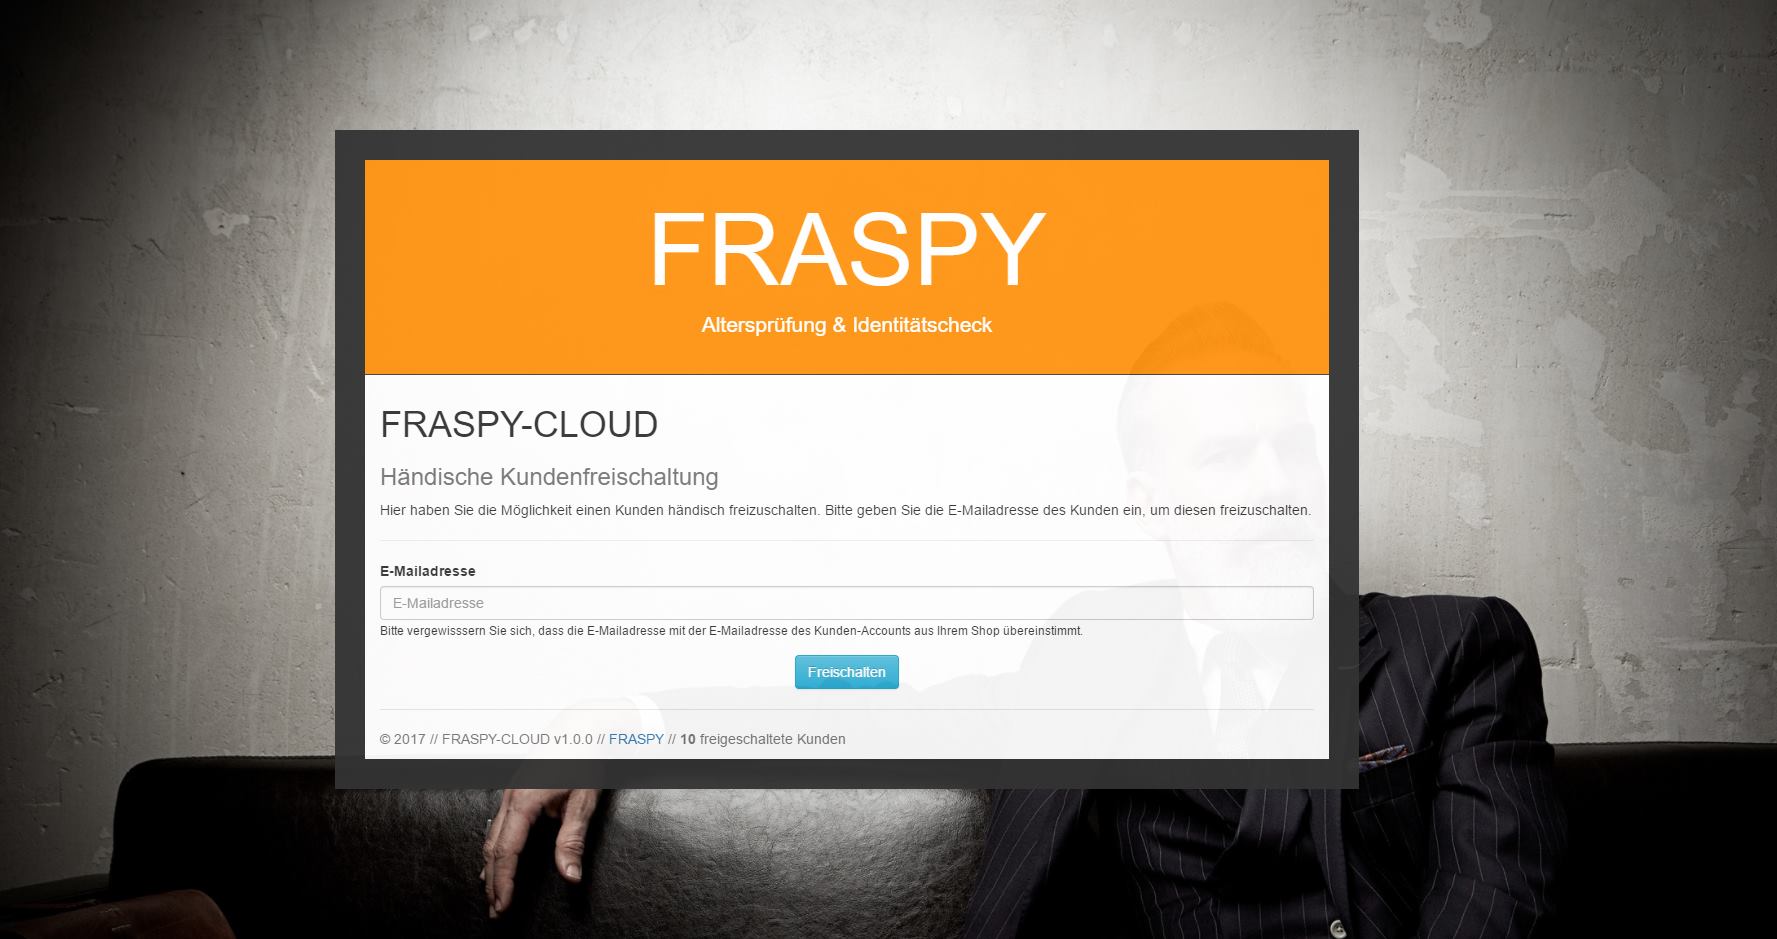 Über die gesicherte FRASPY-Cloud erhalten Sie Zugang um Ihre Kunden händisch freischalten zu können.